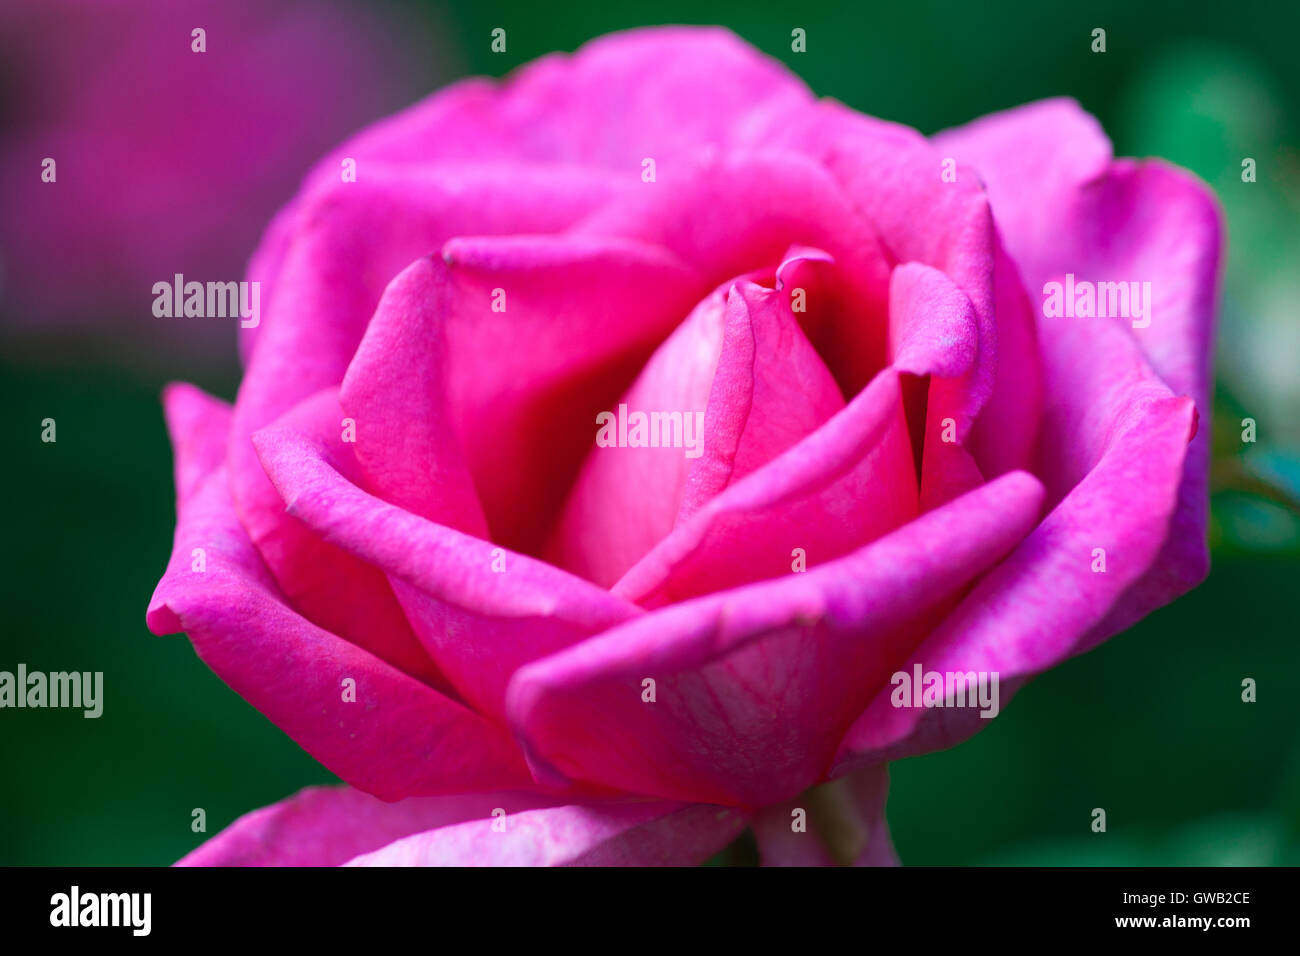 Rosa rose Blume vor dem Grün und lila Hintergrund. Rose Blume ist ein Symbol für Liebe, Leben und Licht Stockfoto